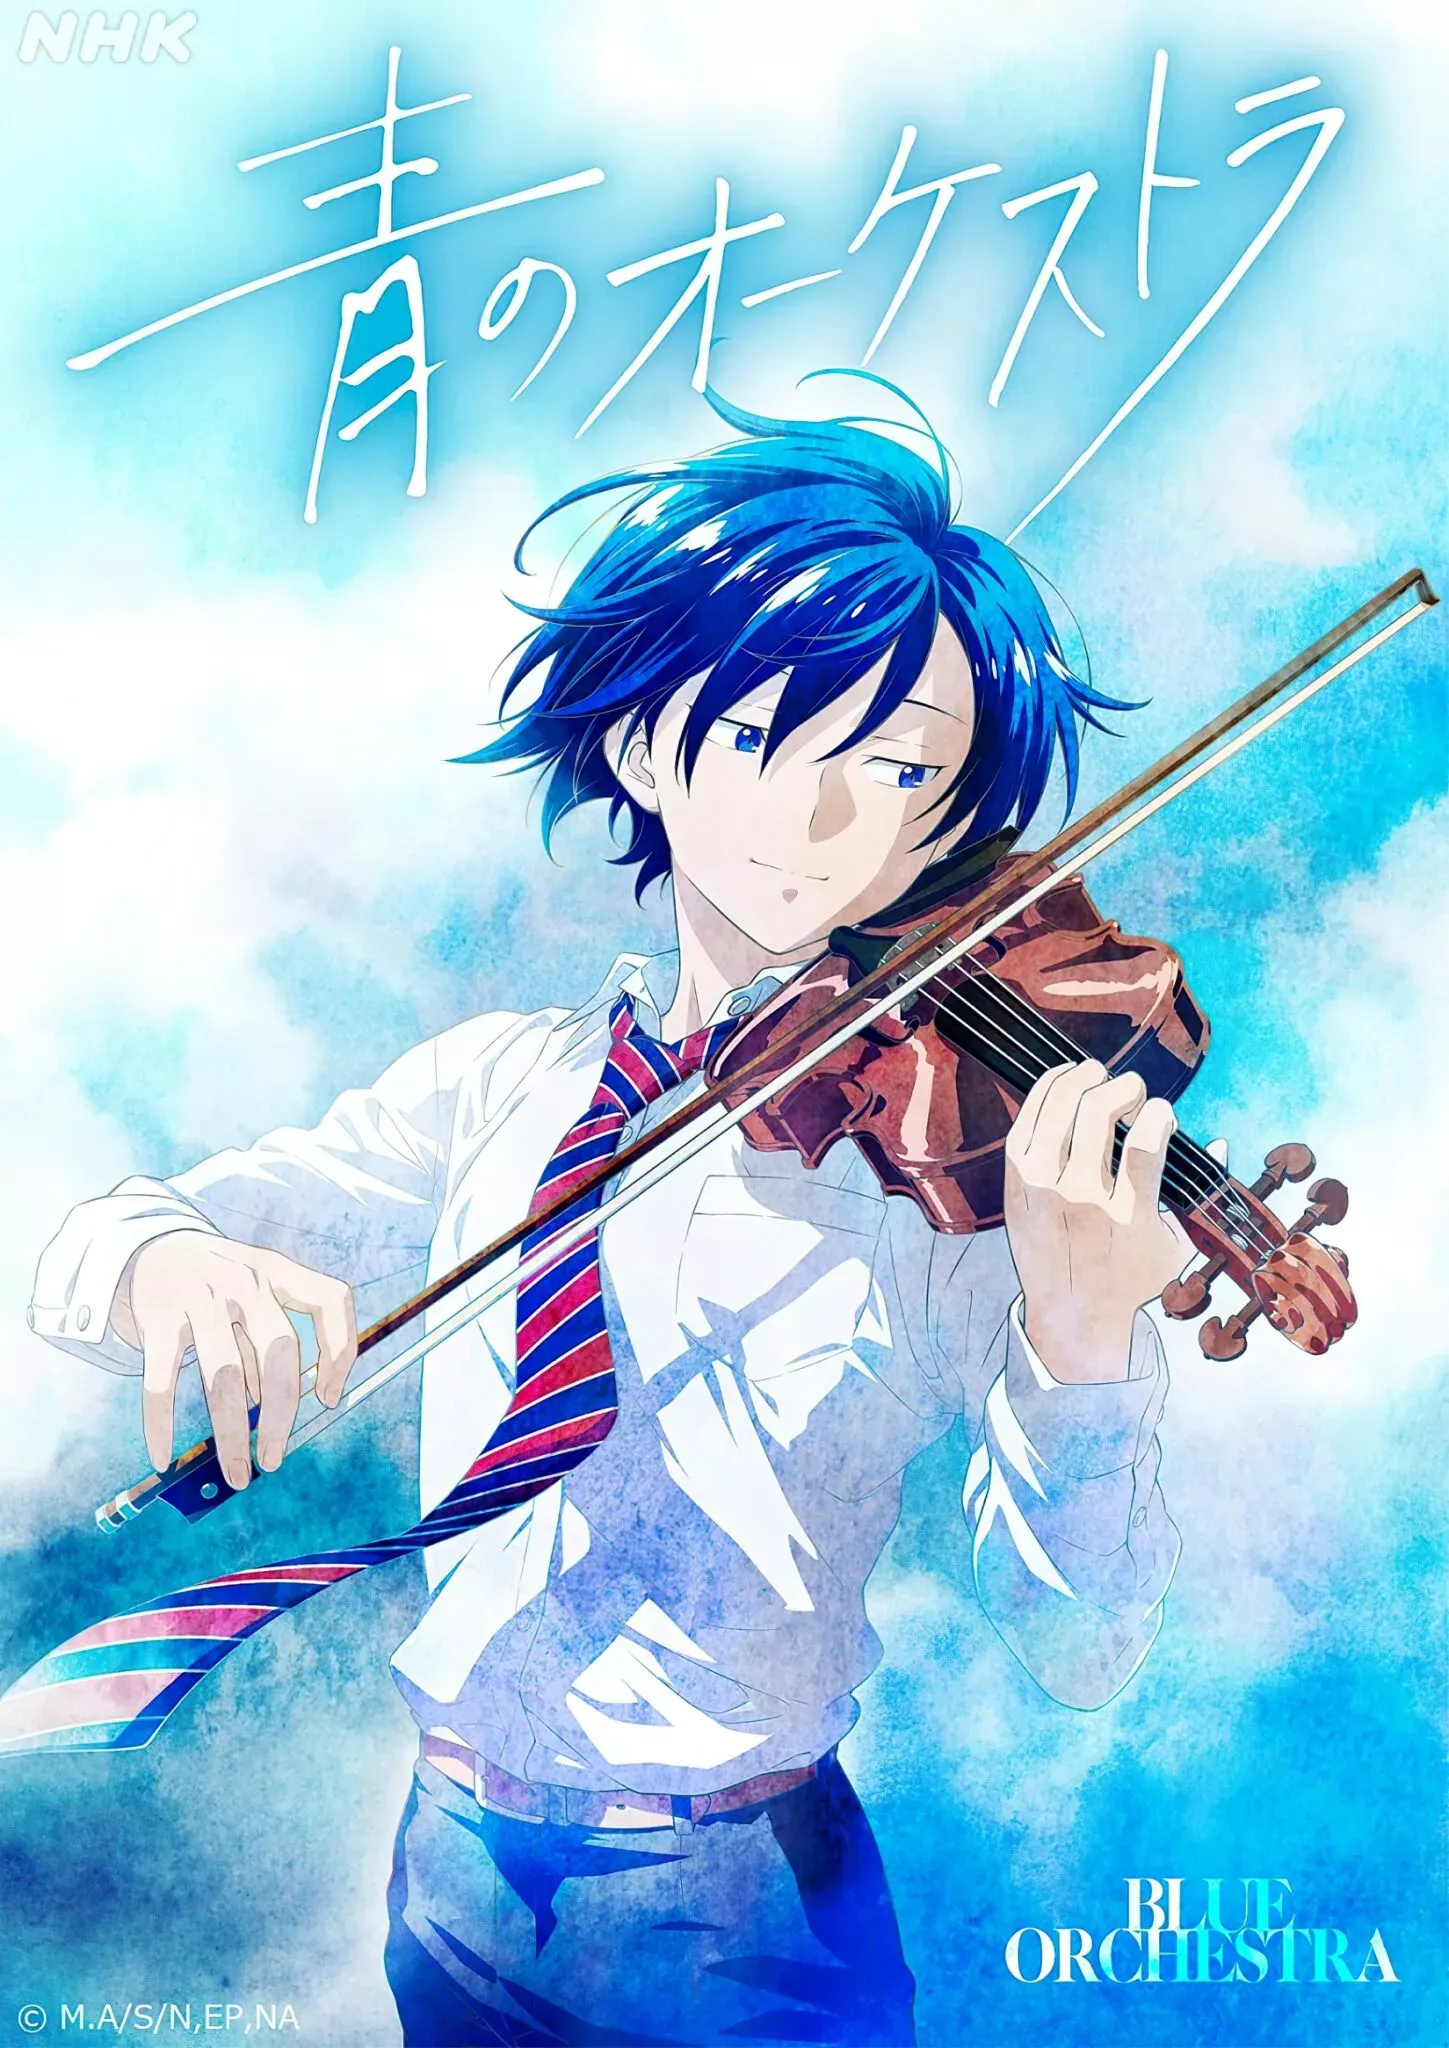 Novo Visual do Anime Ao no Orchestra Confirmou Estreia em 2023